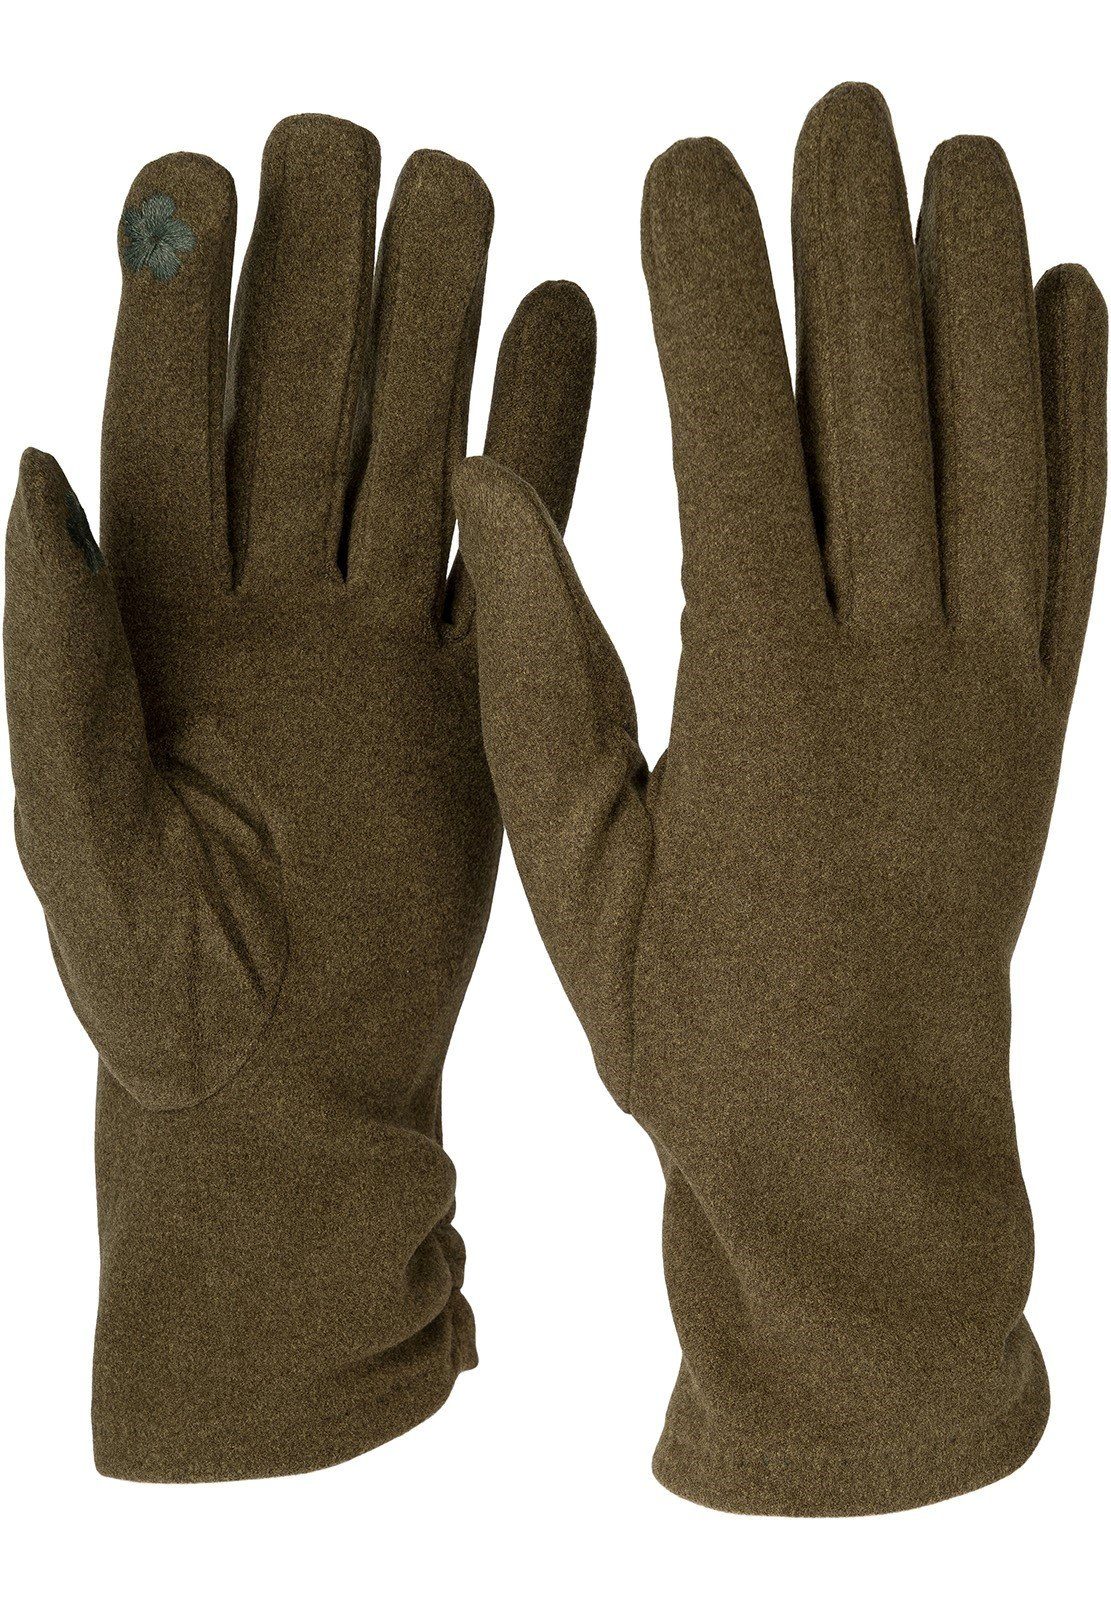 styleBREAKER Oliv Touchscreen Fleecehandschuhe Handschuhe gerafft seitlich